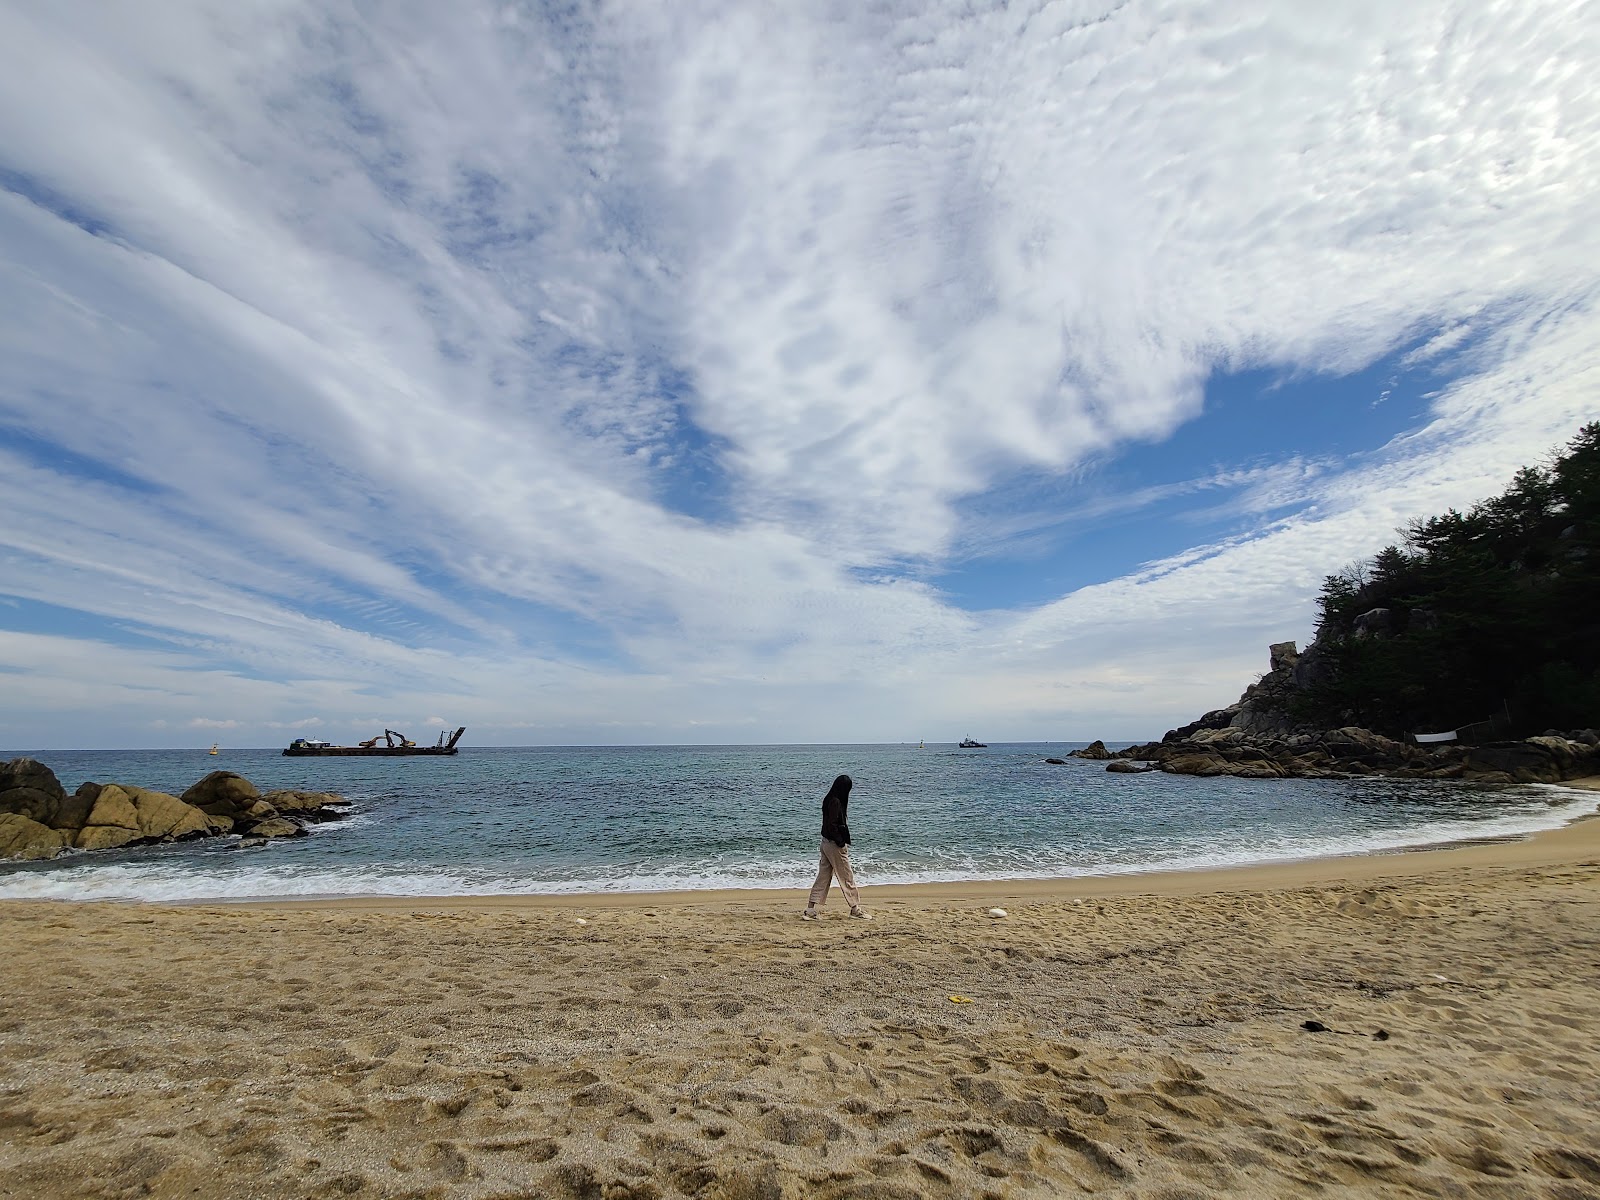 Fotografie cu Ghazin Beach - locul popular printre cunoscătorii de relaxare